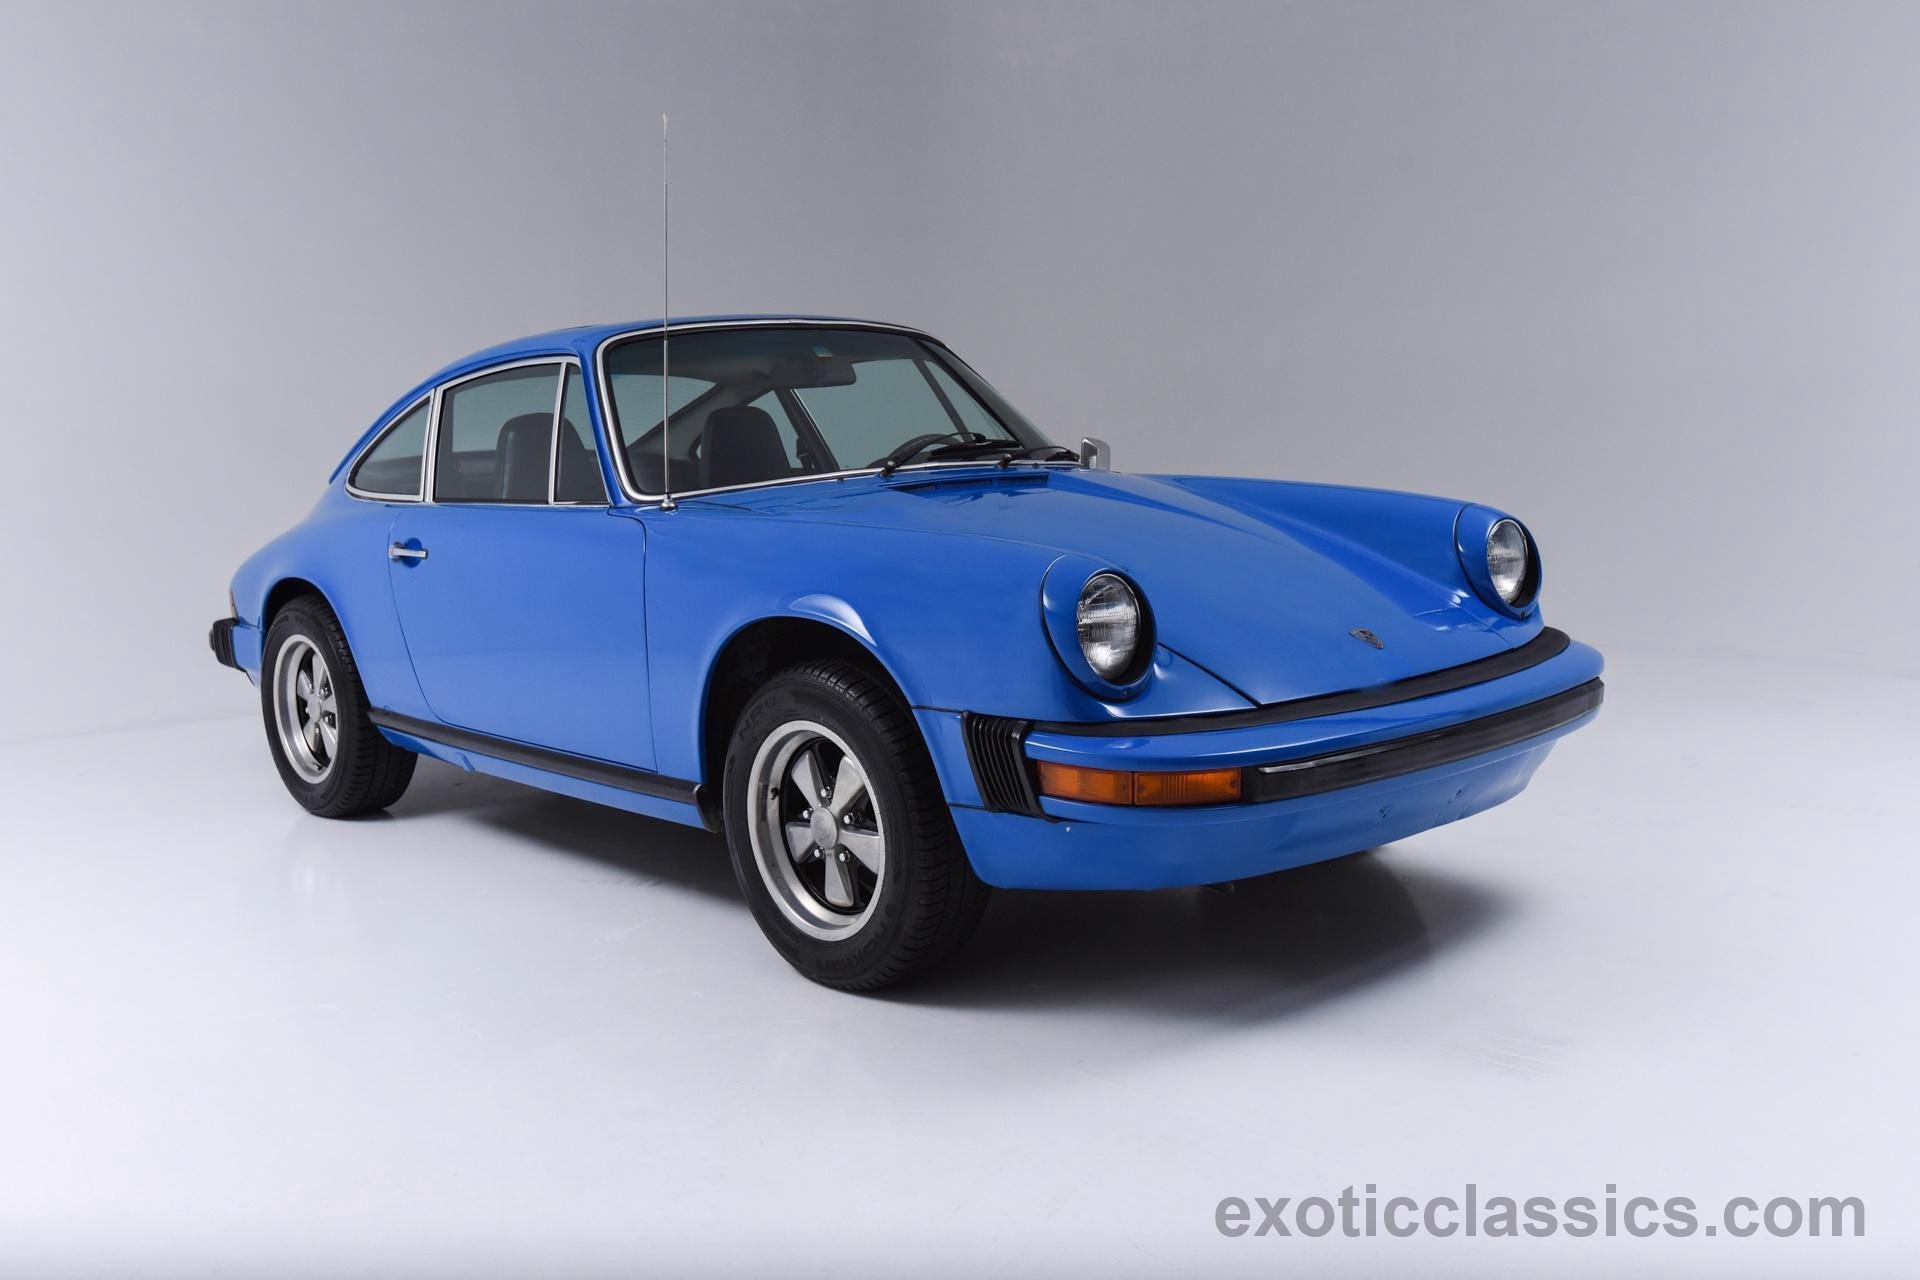 1976, Porsche, 912 e, Sunroof, Coupe, Blue, Riviera, Classic, Cars Wallpaper